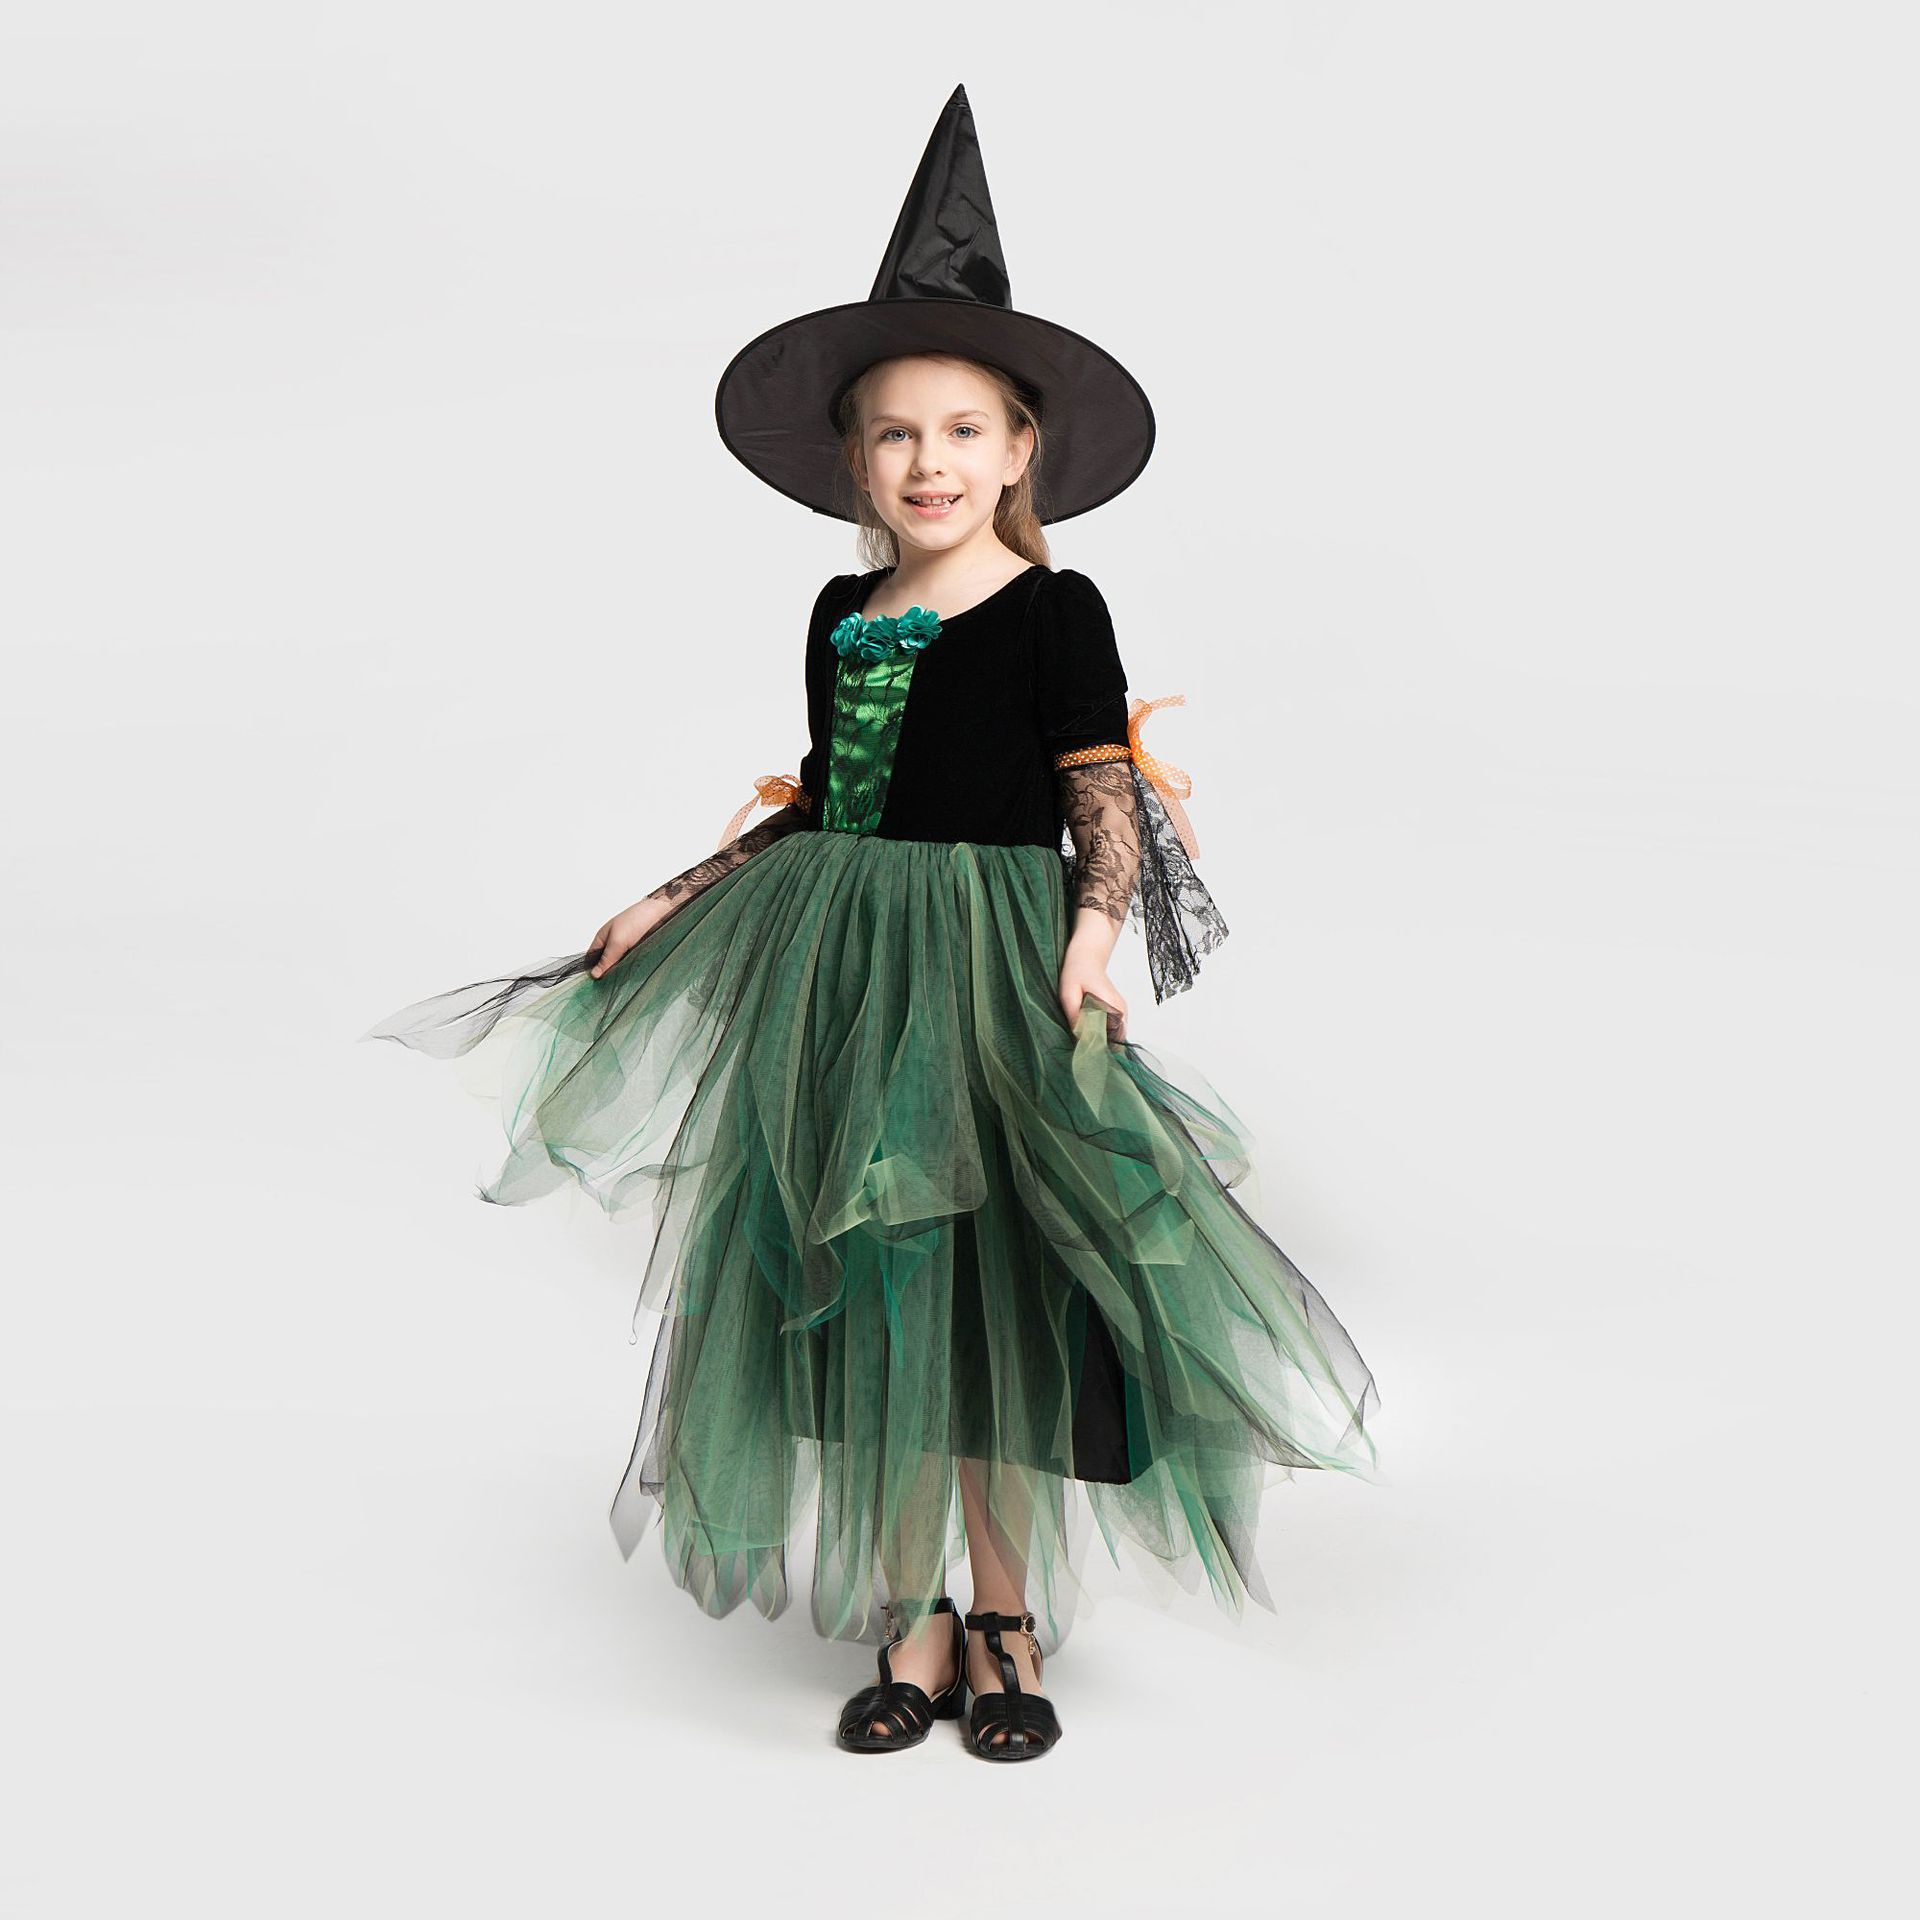 ハロウィン衣装 女の子 魔女 仮装 ハロウィン 衣装 ワンピース コスチューム 子供 かわいい 2点セット